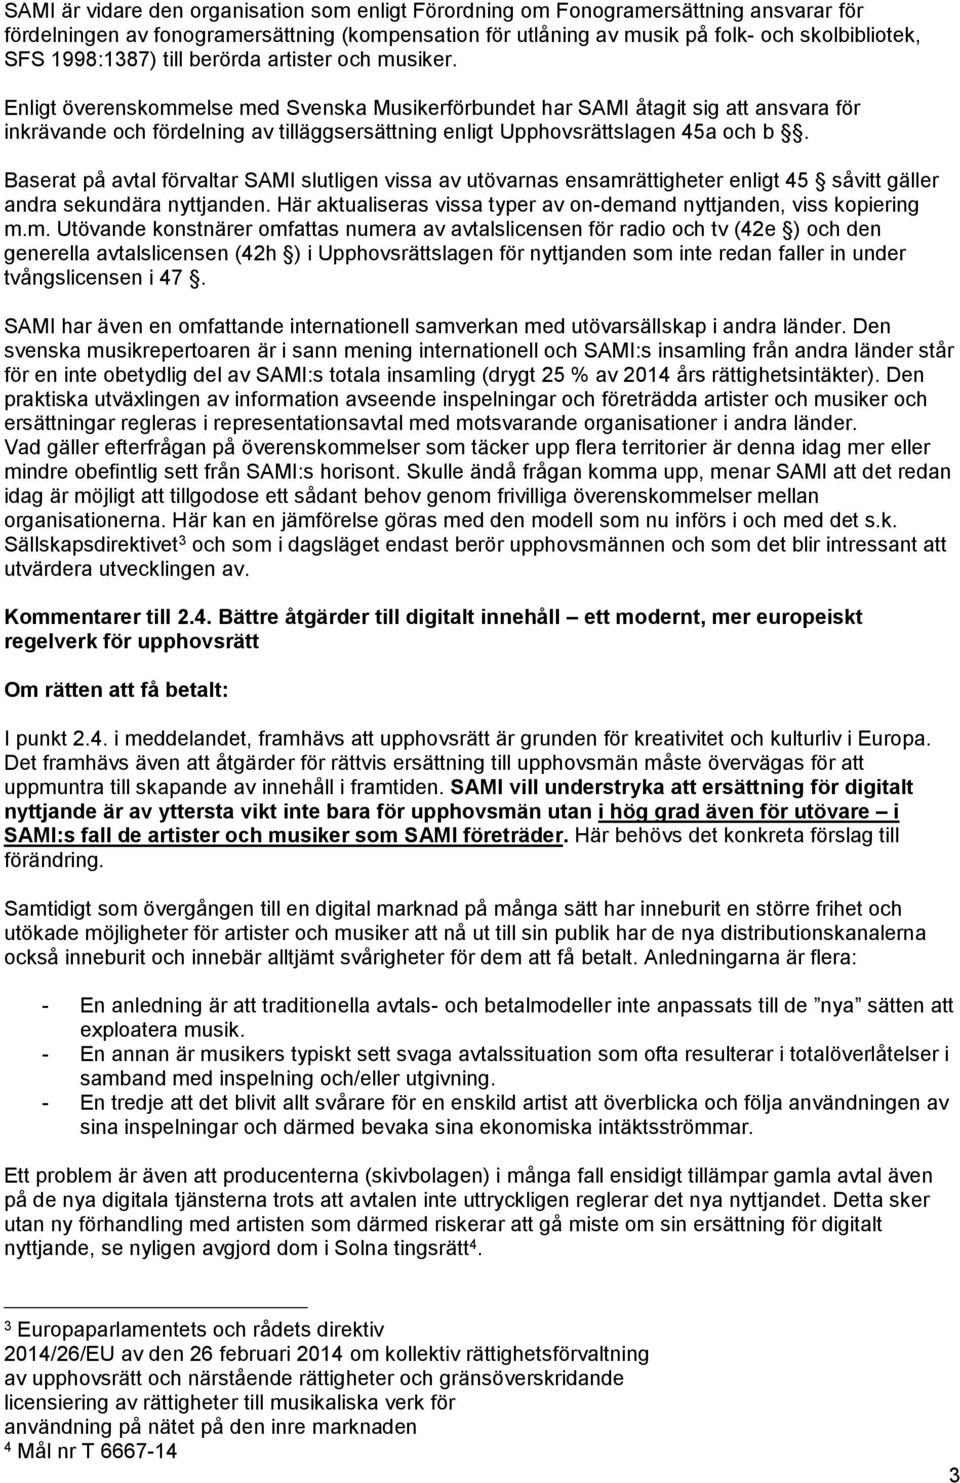 Enligt överenskommelse med Svenska Musikerförbundet har SAMI åtagit sig att ansvara för inkrävande och fördelning av tilläggsersättning enligt Upphovsrättslagen 45a och b.